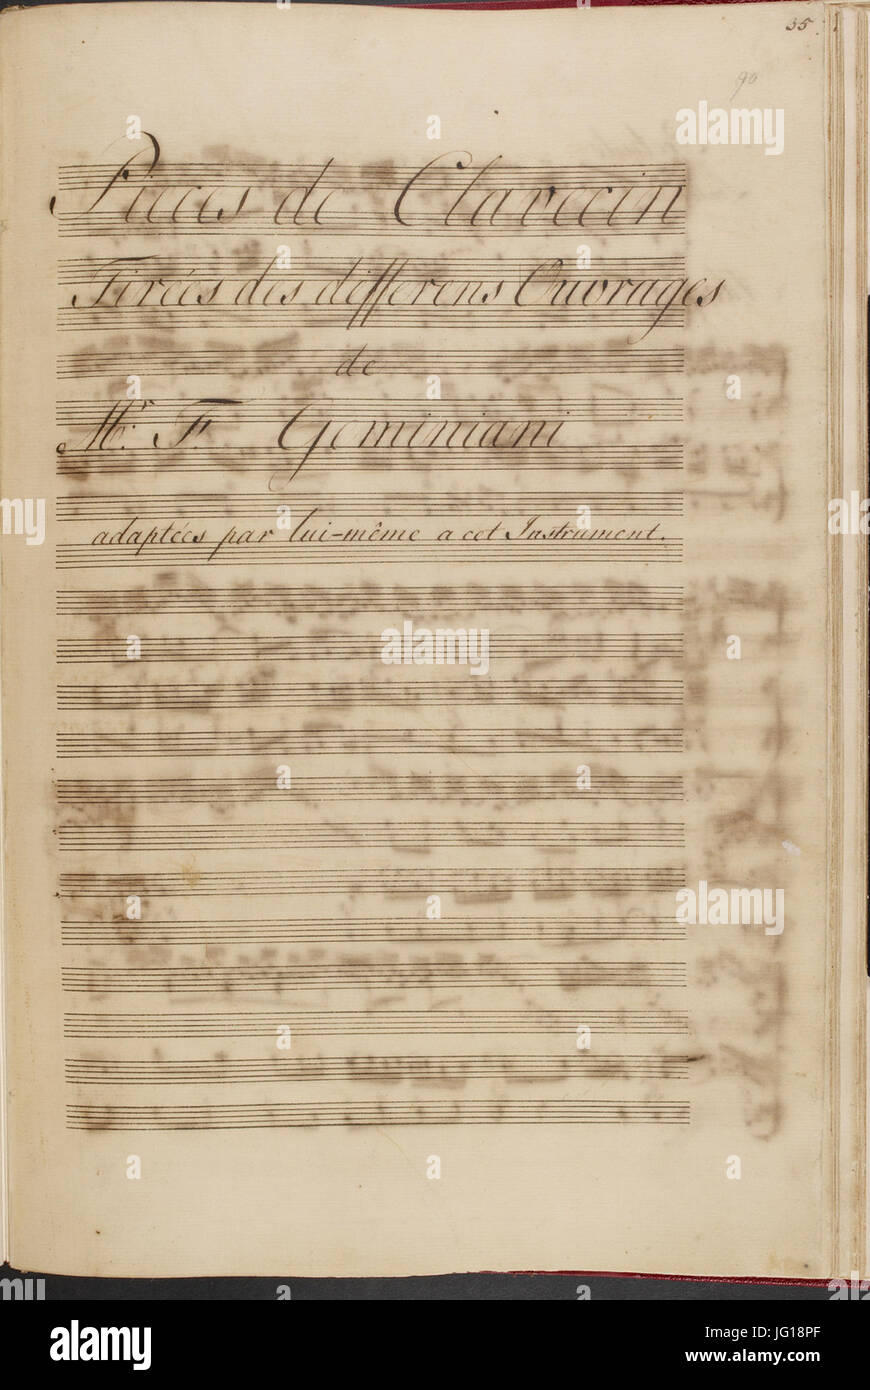 Francesco Saverio Geminiani - Pièces de clavecin. (BL Add MS 16155 f. 90r) Stock Photo